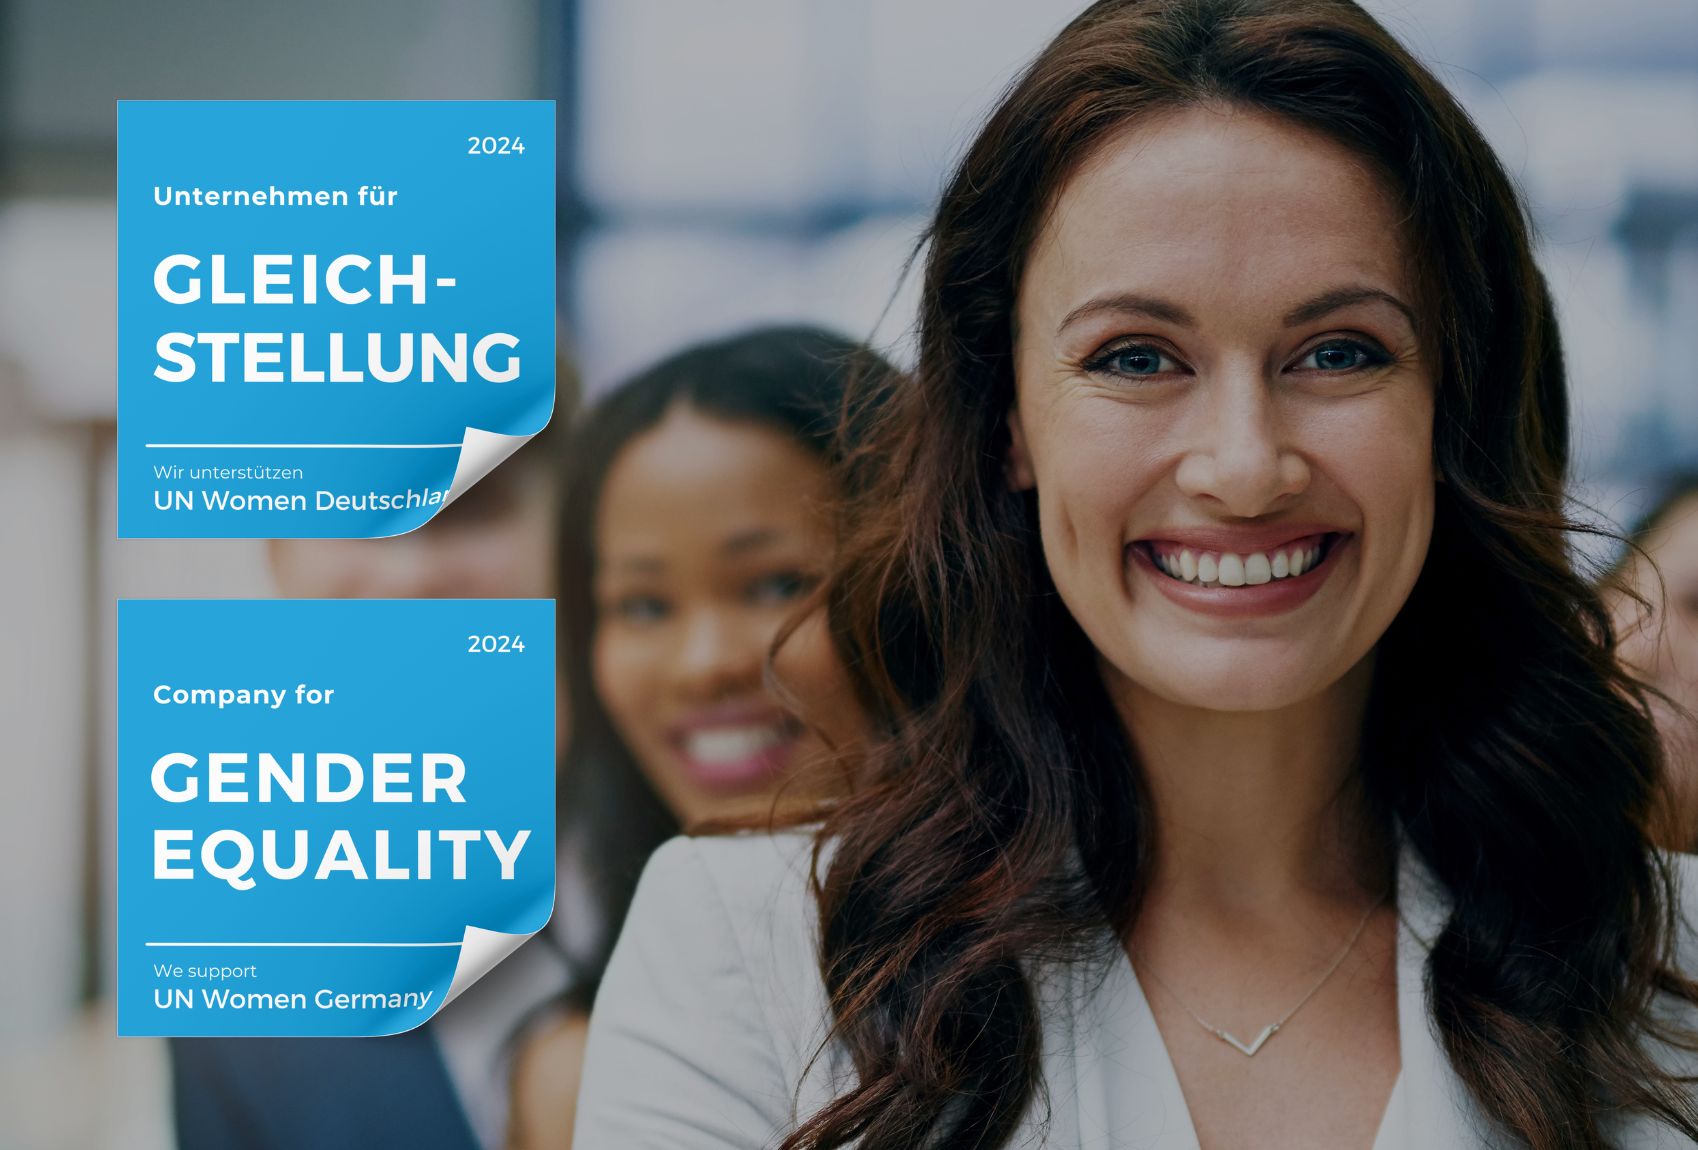 Frau lächelt in Kamera - Unternehmen für Gleichstellung werden - UN Women Deutschland